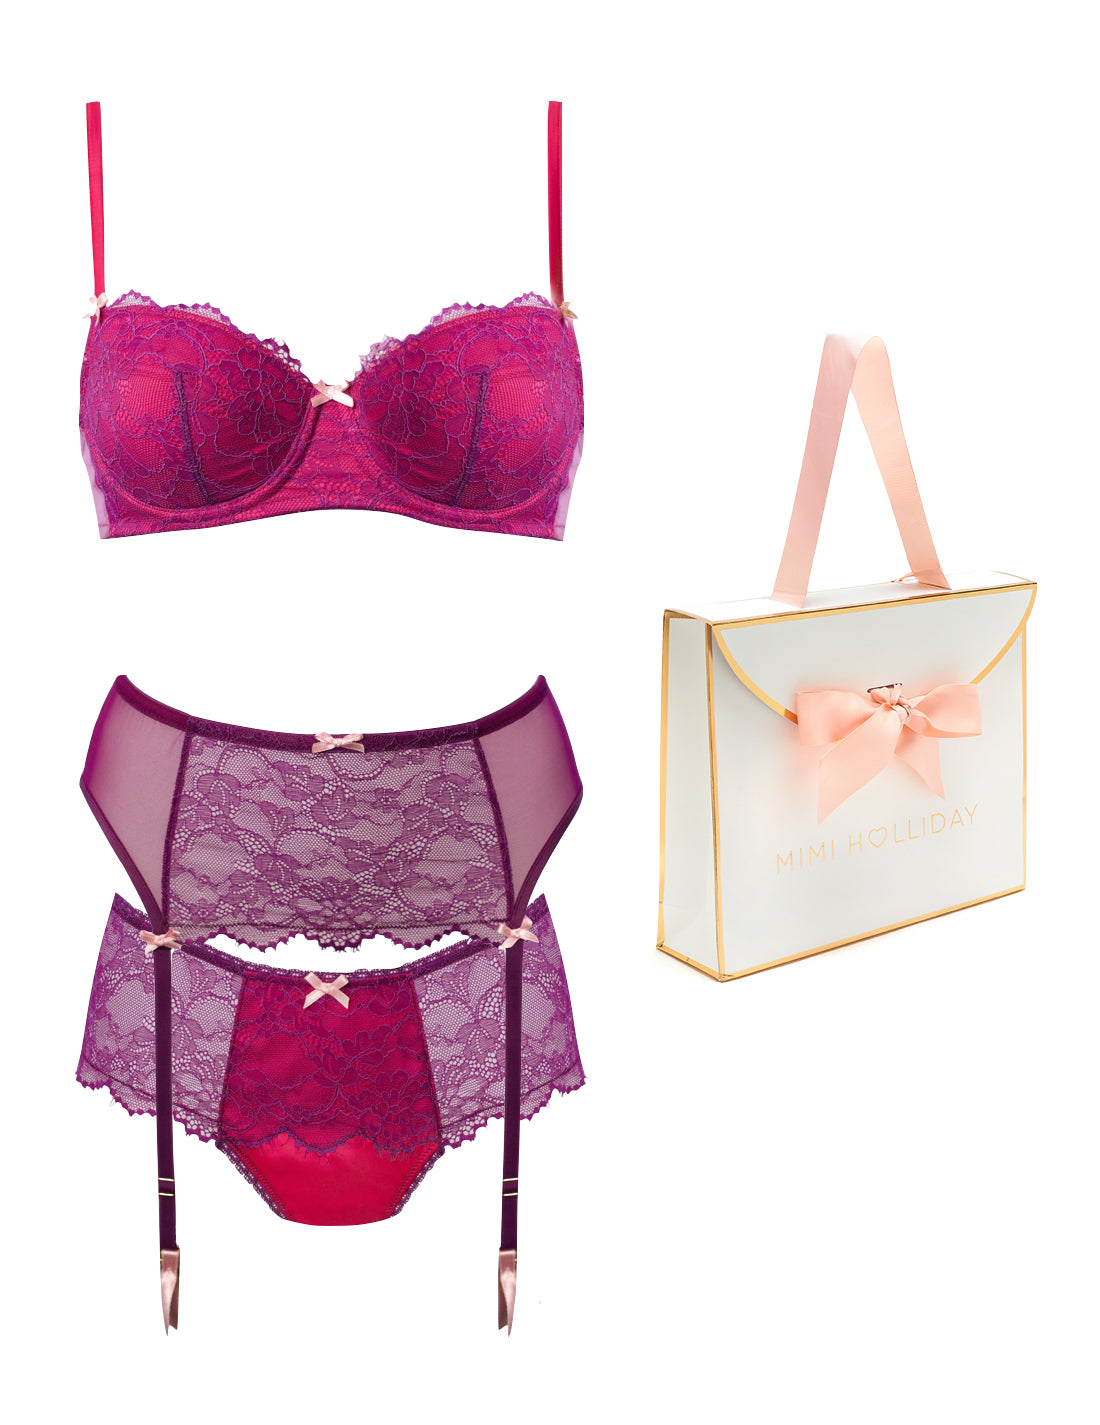 Tourmaline Padded Bra, Brief, Suspender & Bag Gift Set